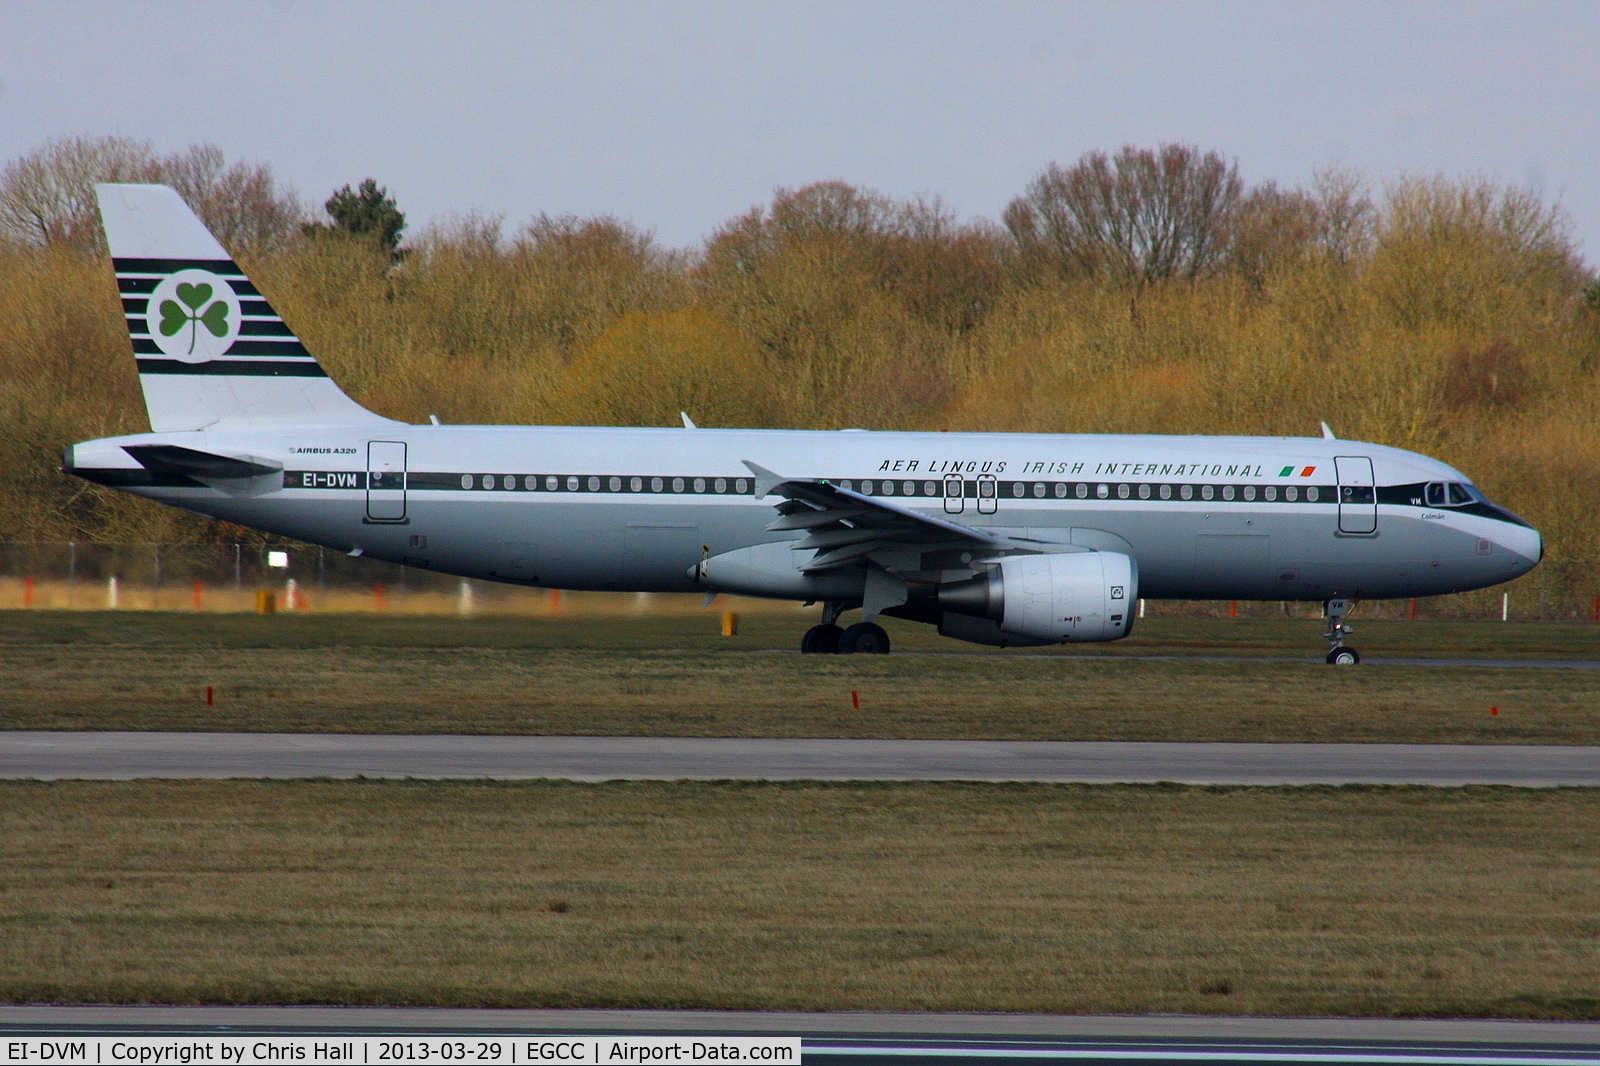 EI-DVM, 2011 Airbus A320-214 C/N 4634, Aer Lingus retro scheme